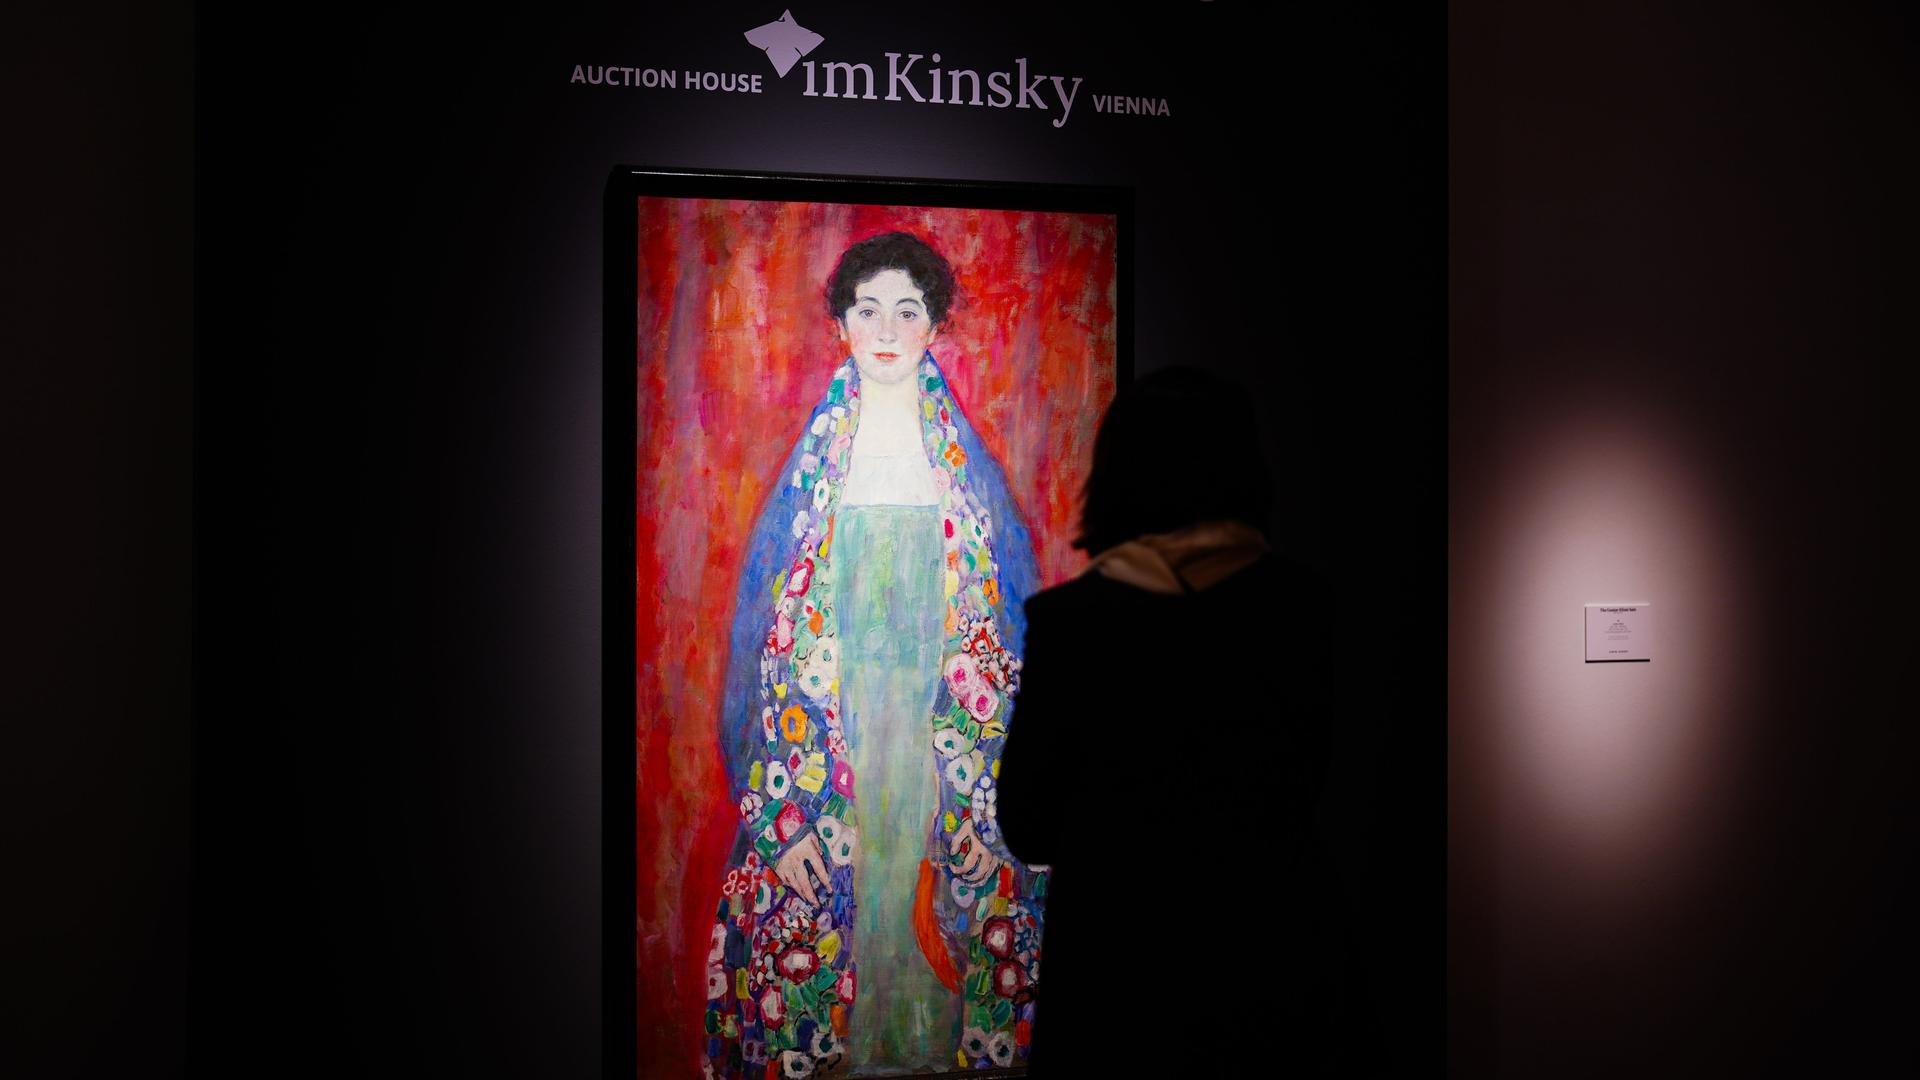 Blick auf das Gemälde "Fräulein Lieser" von Gustav Klimt. Es ist hell erleuchtet vor dunklem Hintergrund.